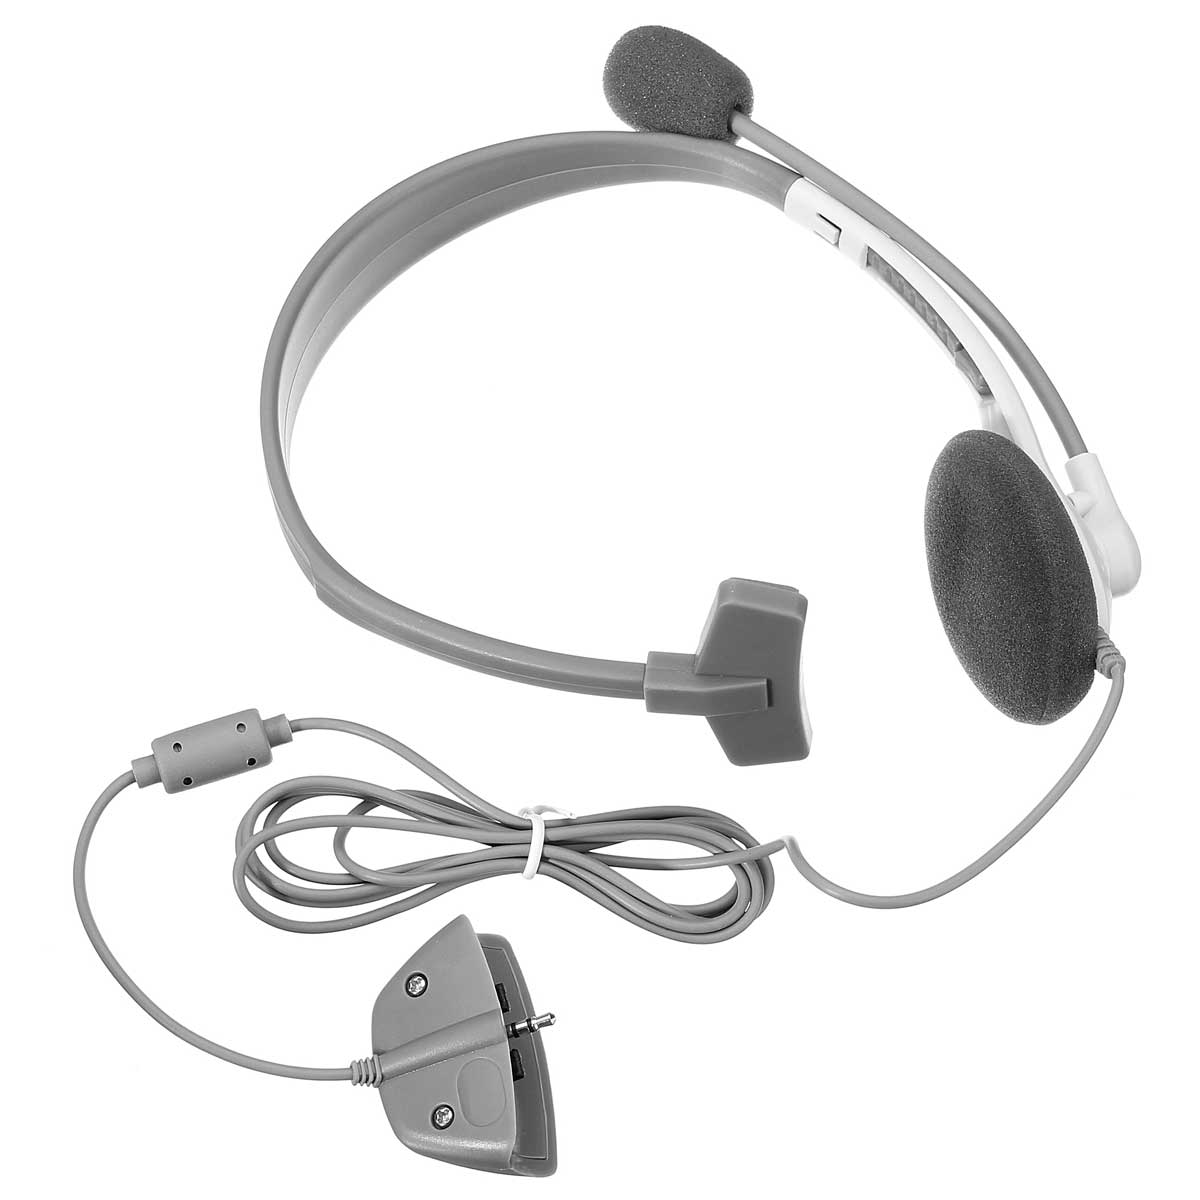 Headphone Earphone HeadSet Microphone w/ Mic HeadPhone for XBOX 360...